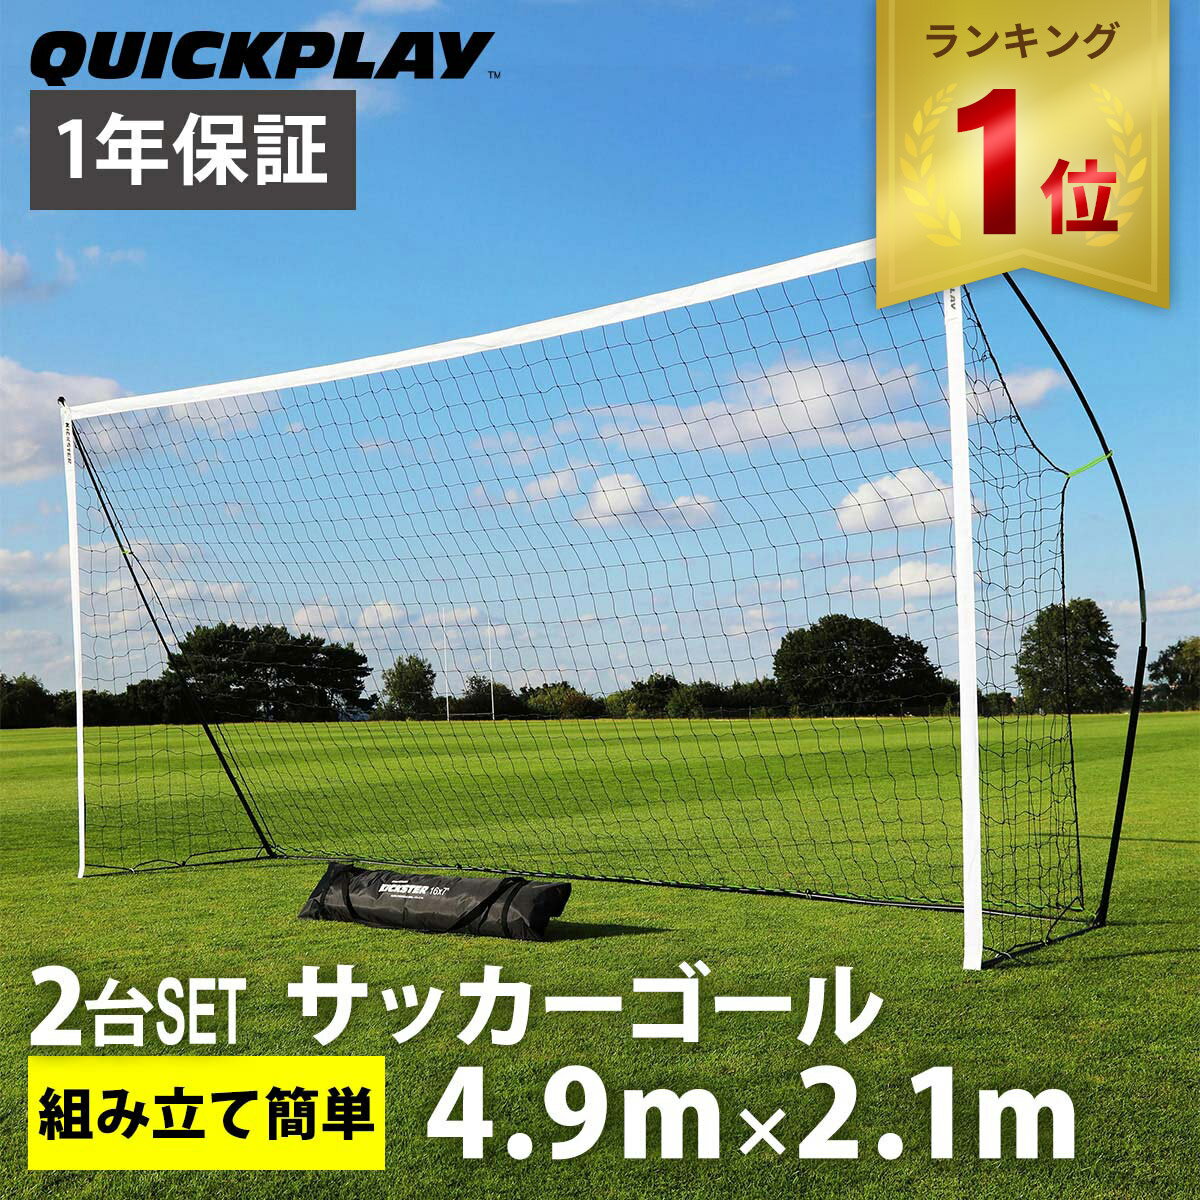  クイックプレイ QUICKPLAY キックスター ポータブル サッカーゴール 少年サッカー8人制サイズ 4.9m×2.1m（16×7ft) 2台セット 組立式 練習器具